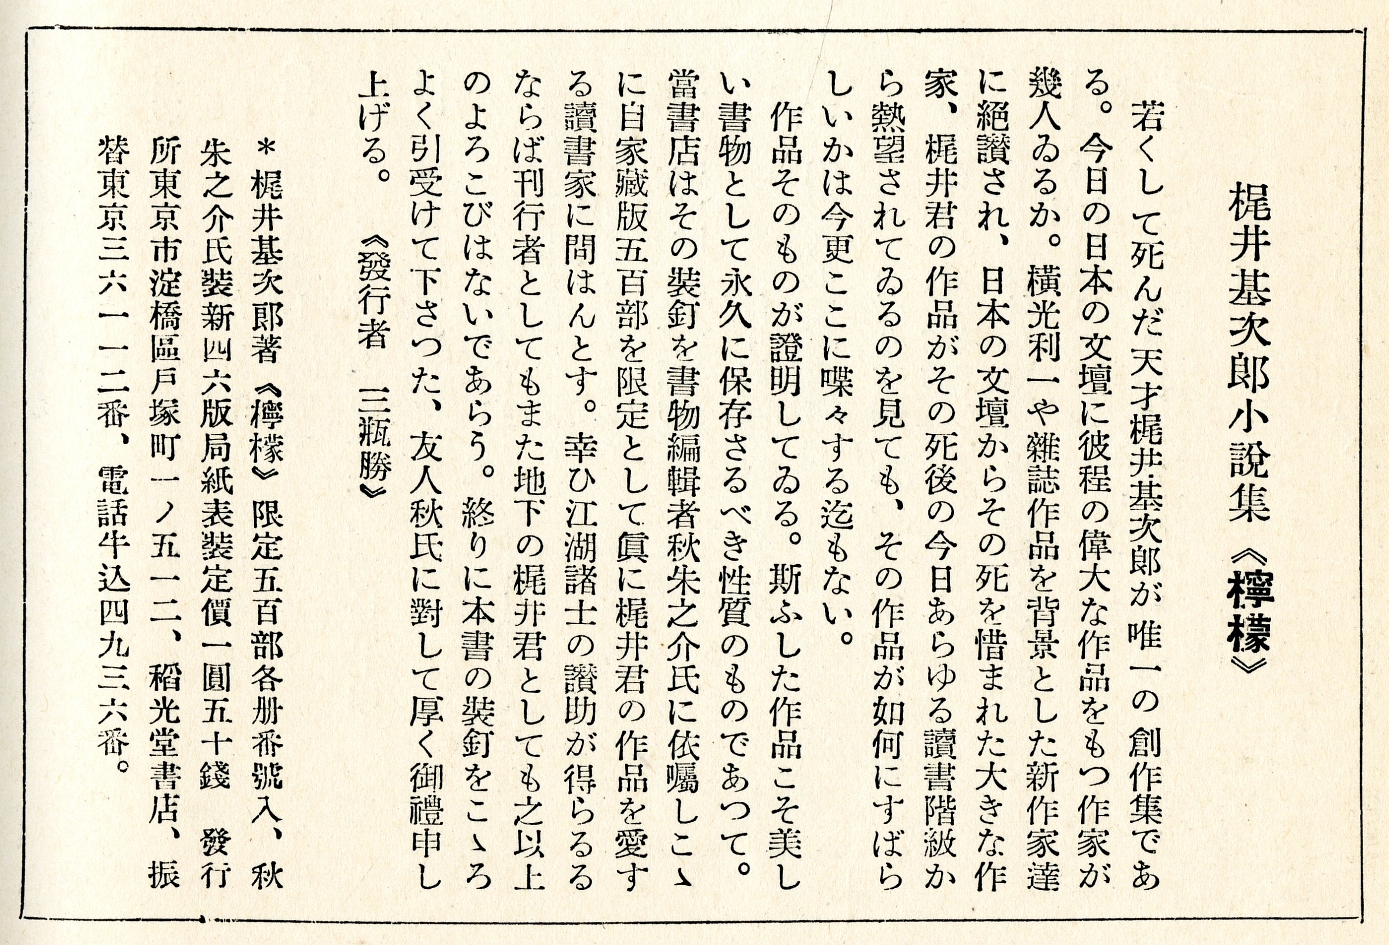 1933年12月梶井基次郎小説集《檸檬》広告